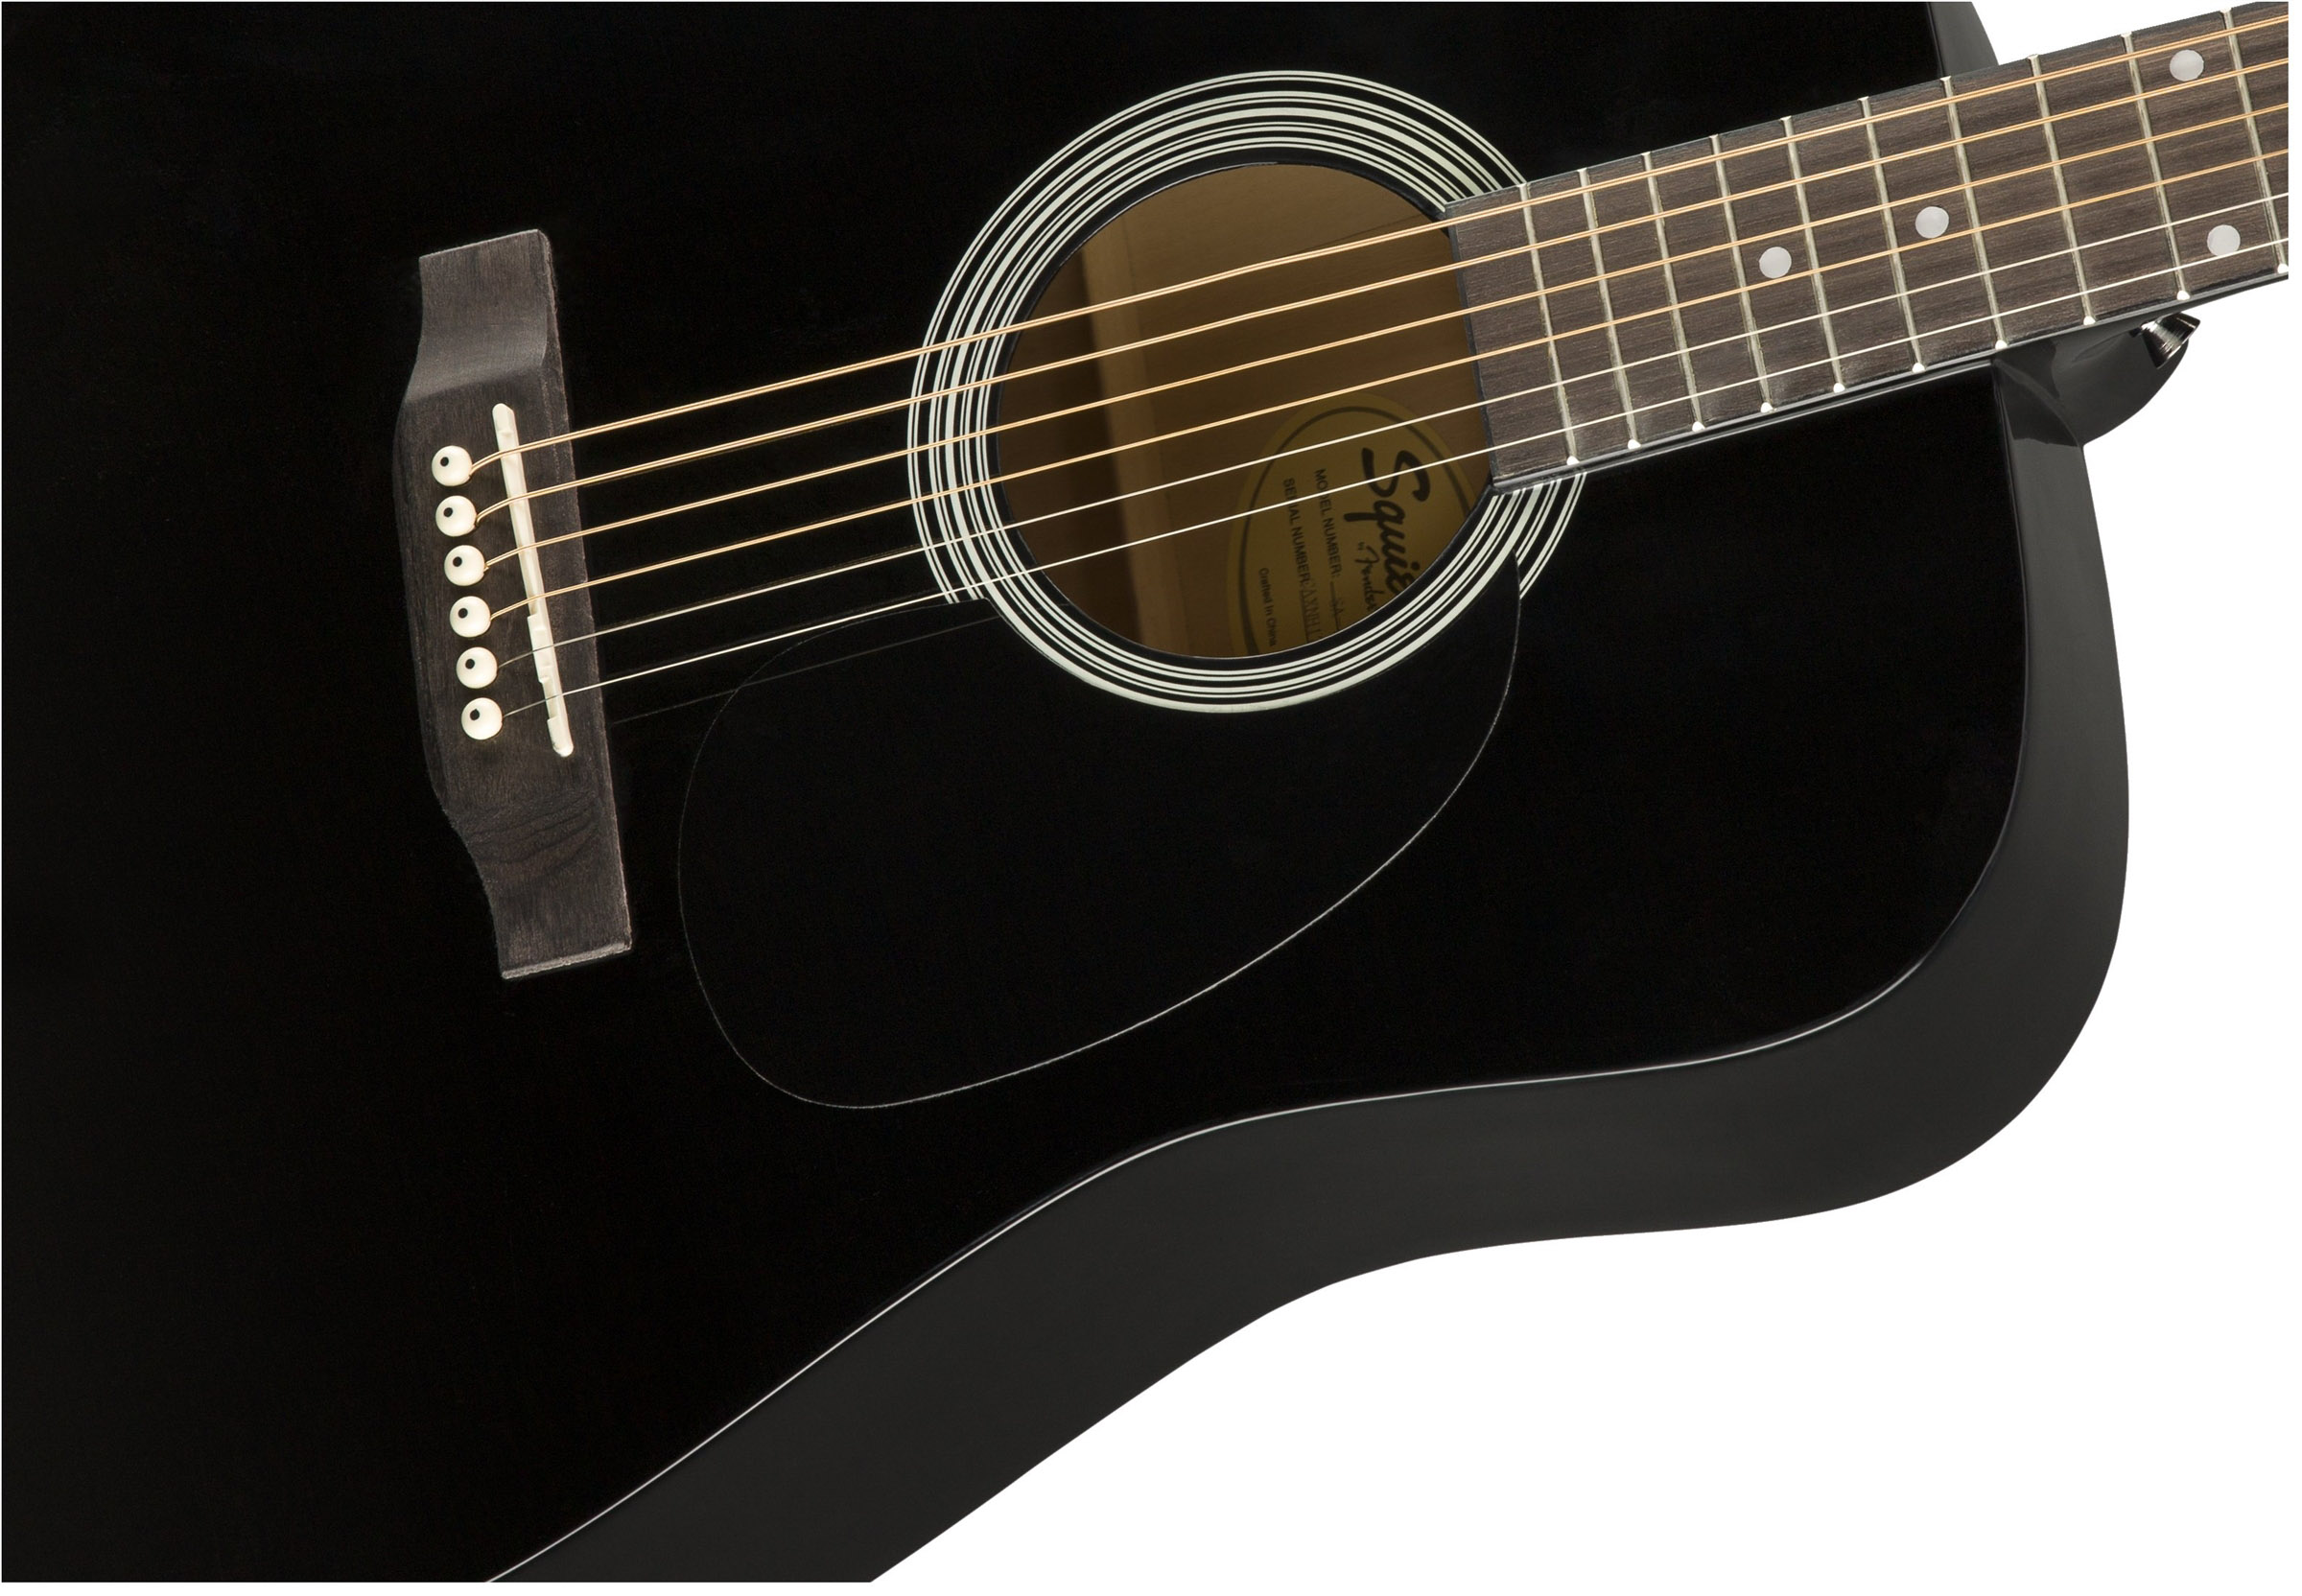 ::Fender Squier Dreadnought Acoustic Guitar - Black